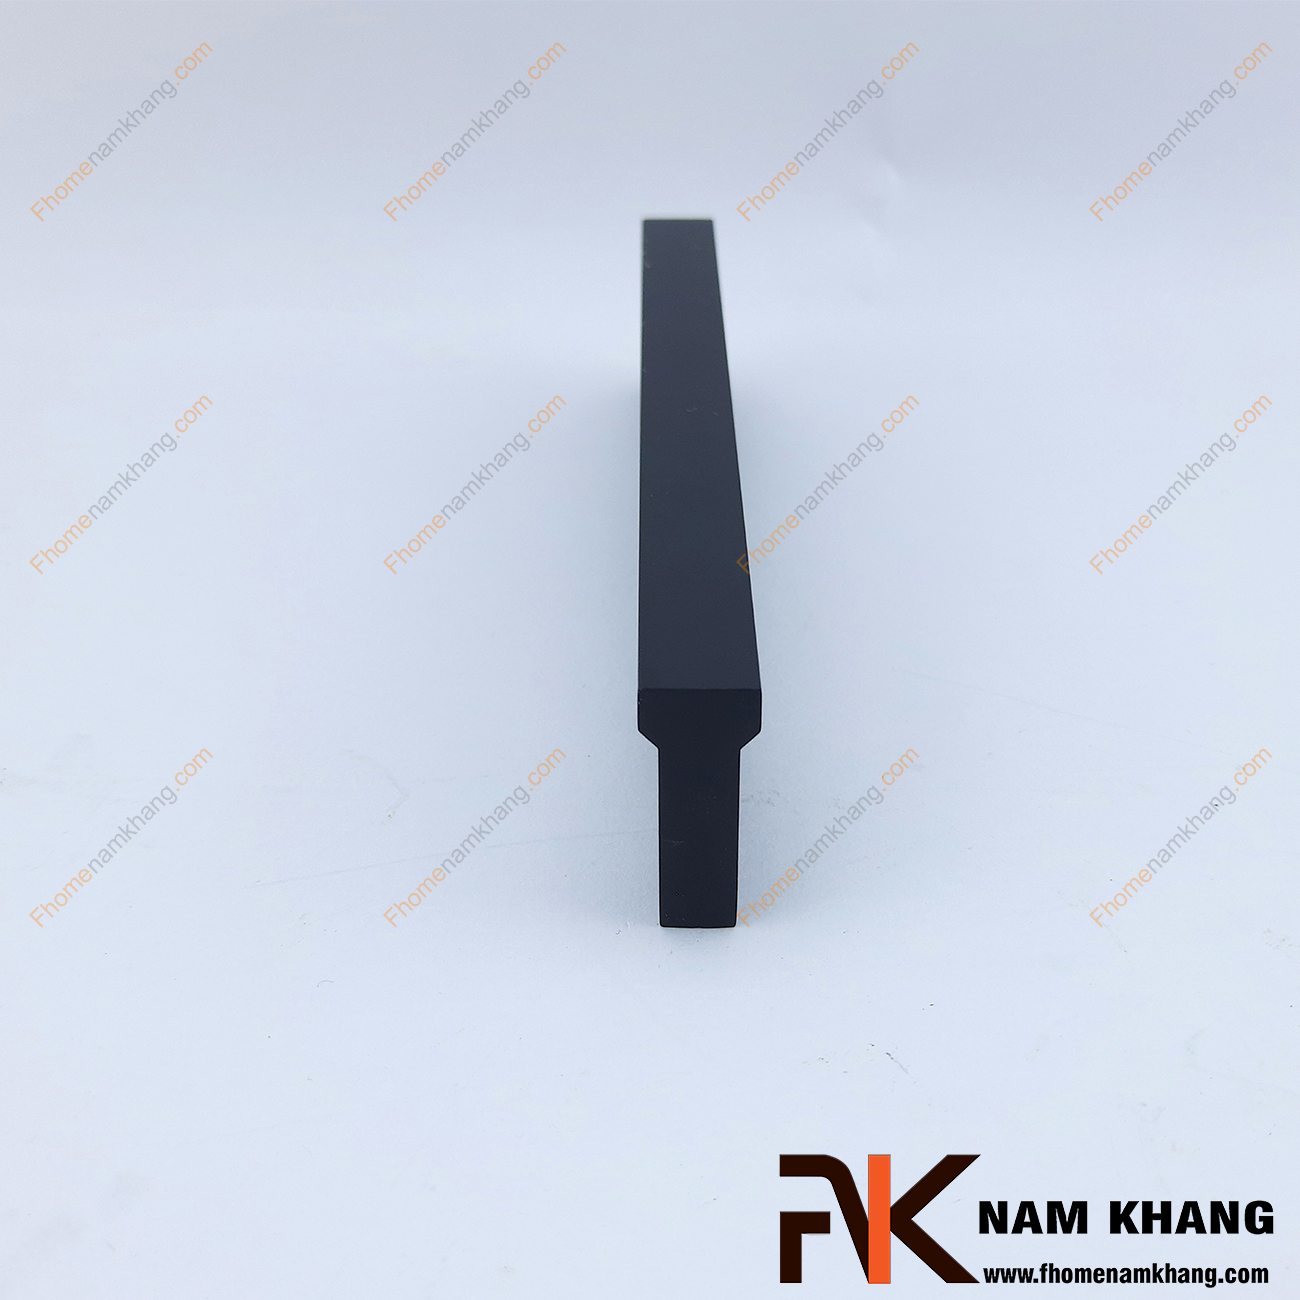 Tay nắm tủ dạng thanh màu đen NK406-D có dạng thanh chữ T với góc cạnh vuông được xử lý gọn gàng. Sỡ hữu công nghệ anode nhôm tạo màu cực đẹp, NK406 mang đến sự thanh lịch và đẳng cấp cho một sản phẩm chất lượng.